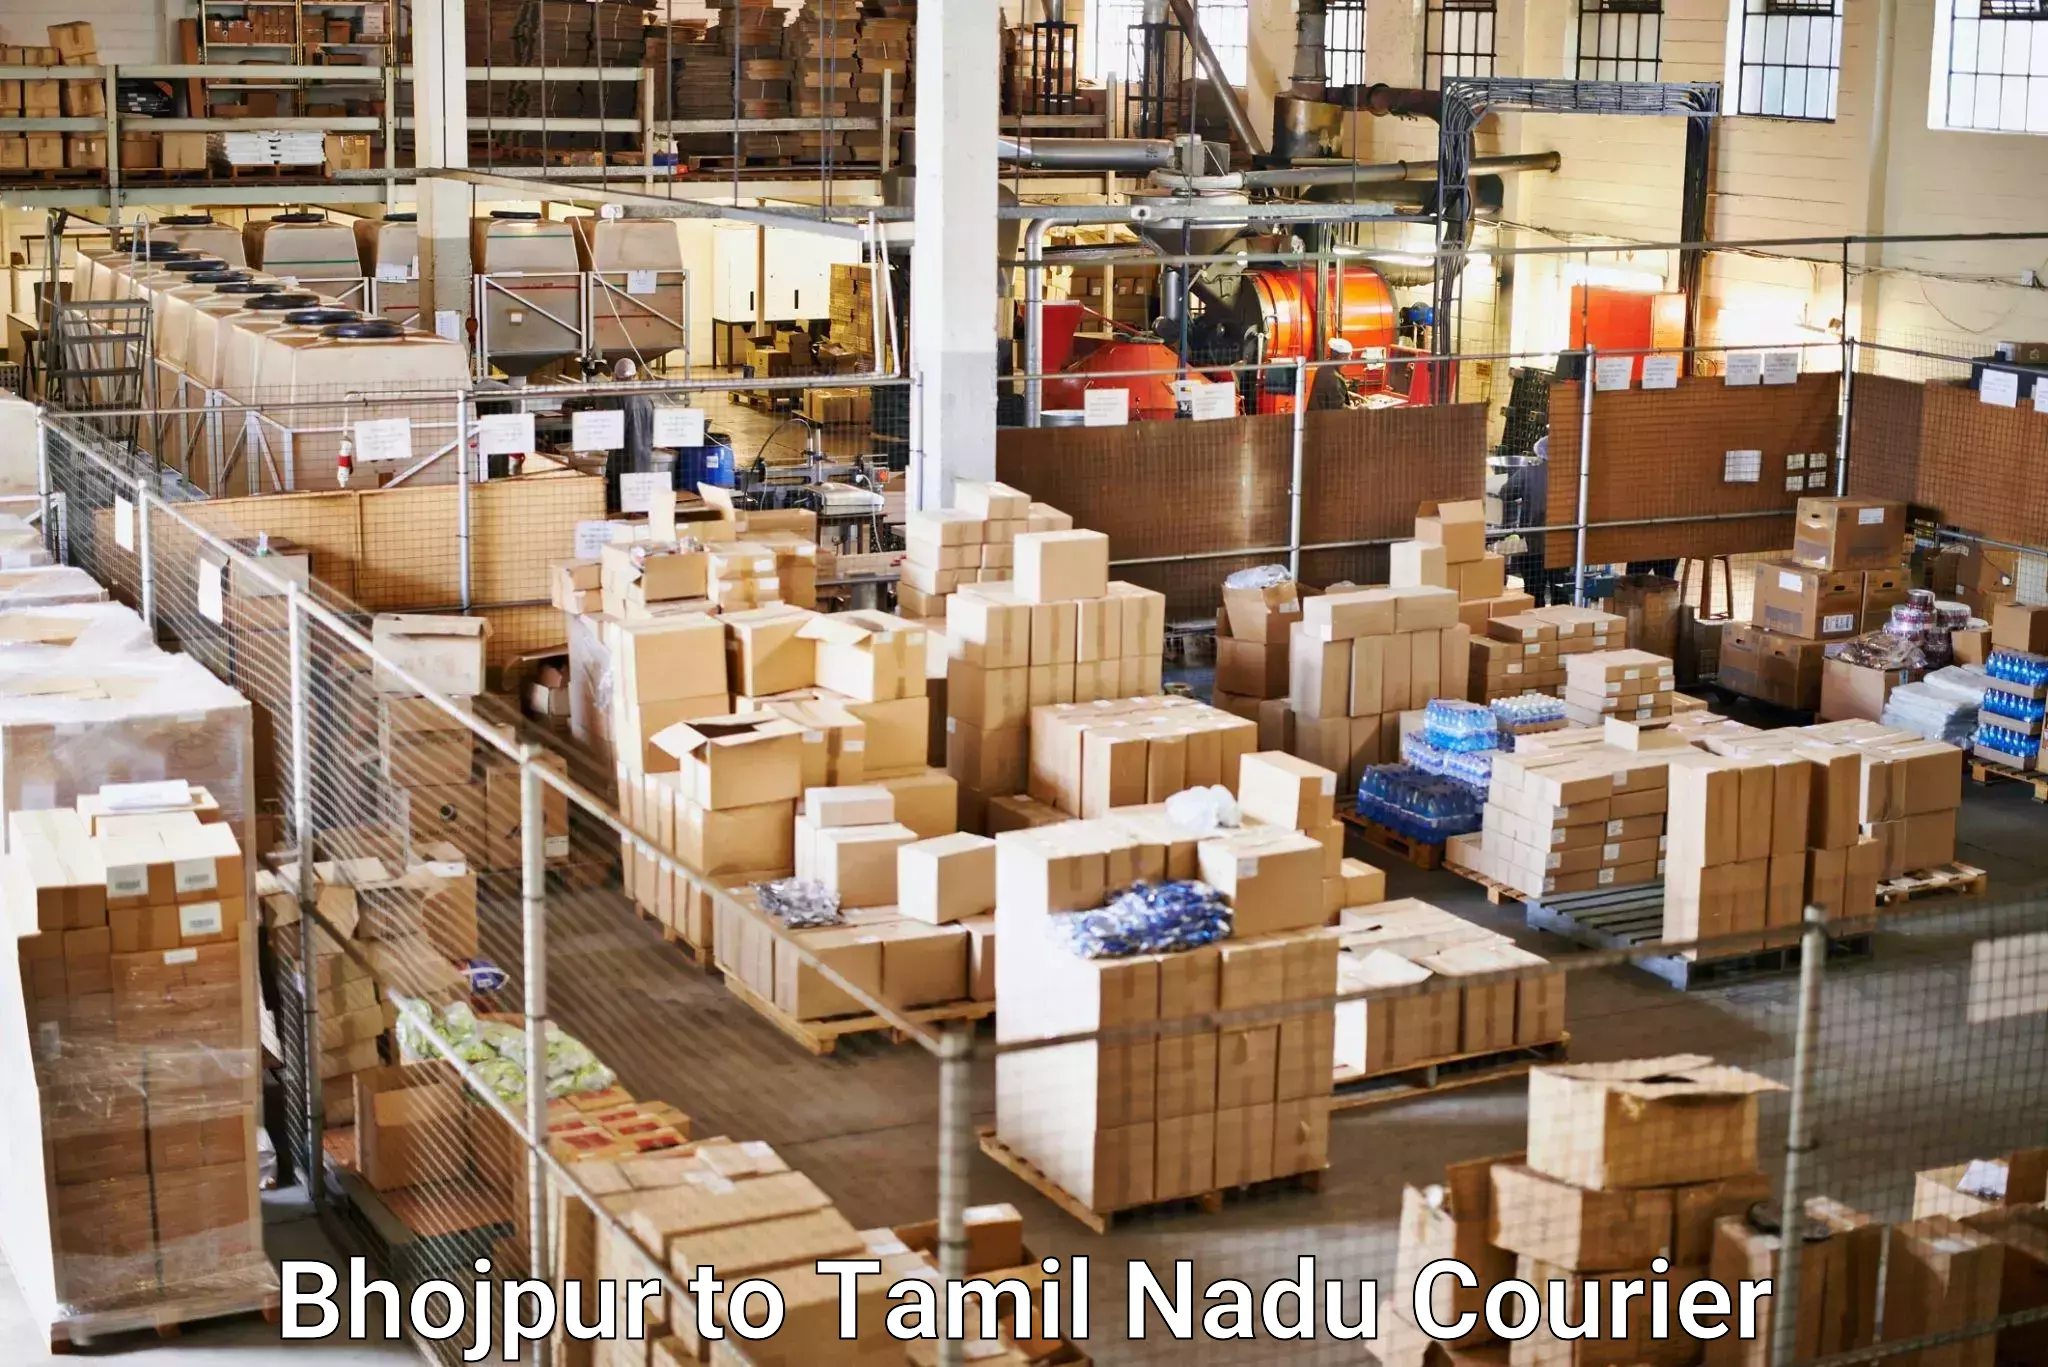 Bulk shipping discounts Bhojpur to Annur